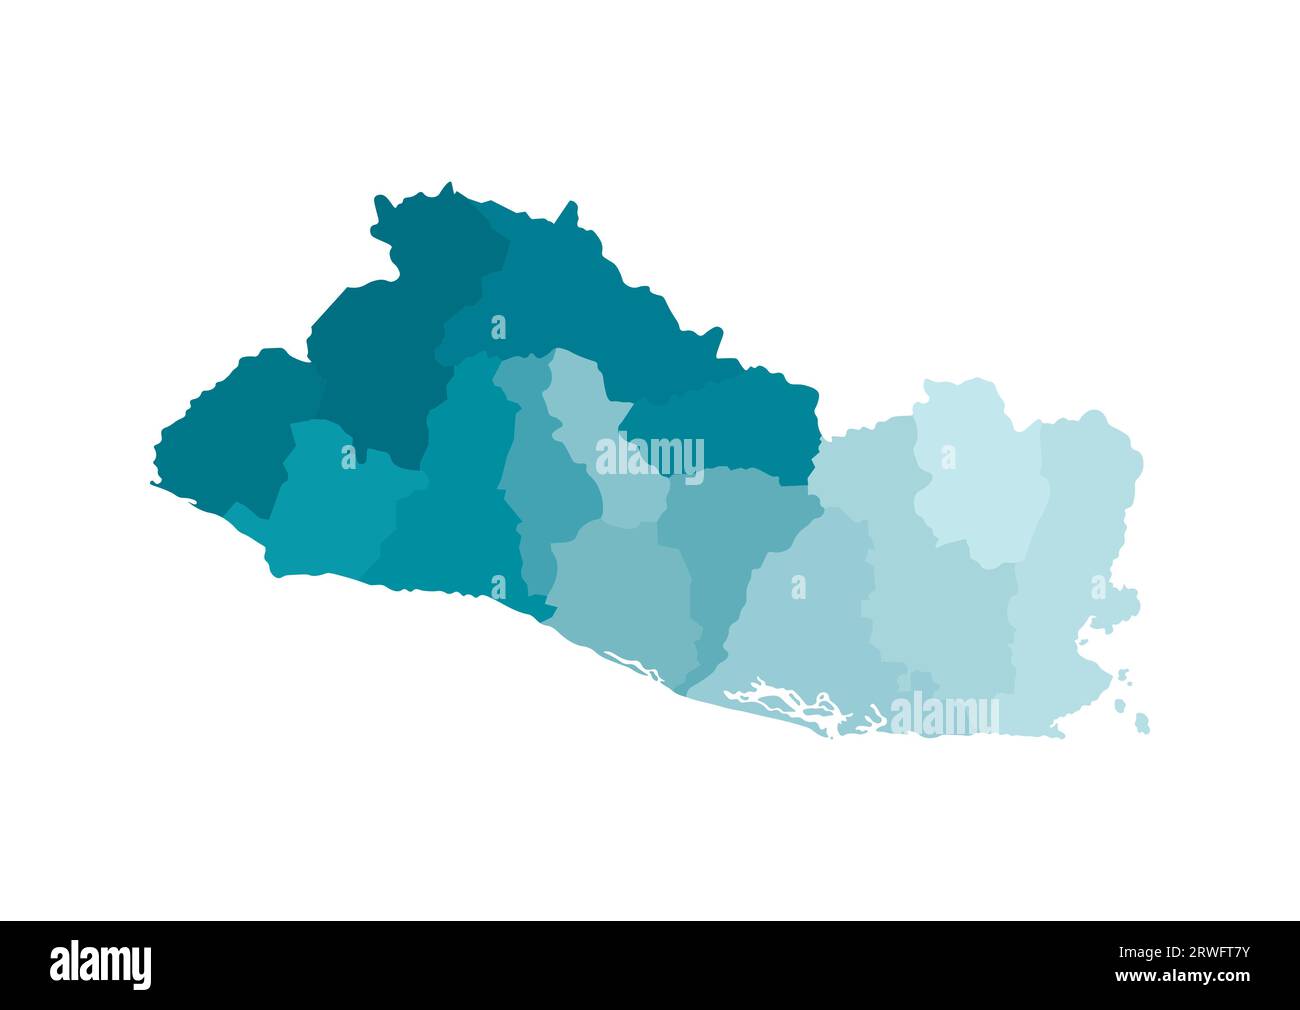 Illustrazione vettoriale isolata della mappa amministrativa semplificata di El Salvador. Confini dei dipartimenti (regioni). Sagome kaki blu colorato. Illustrazione Vettoriale